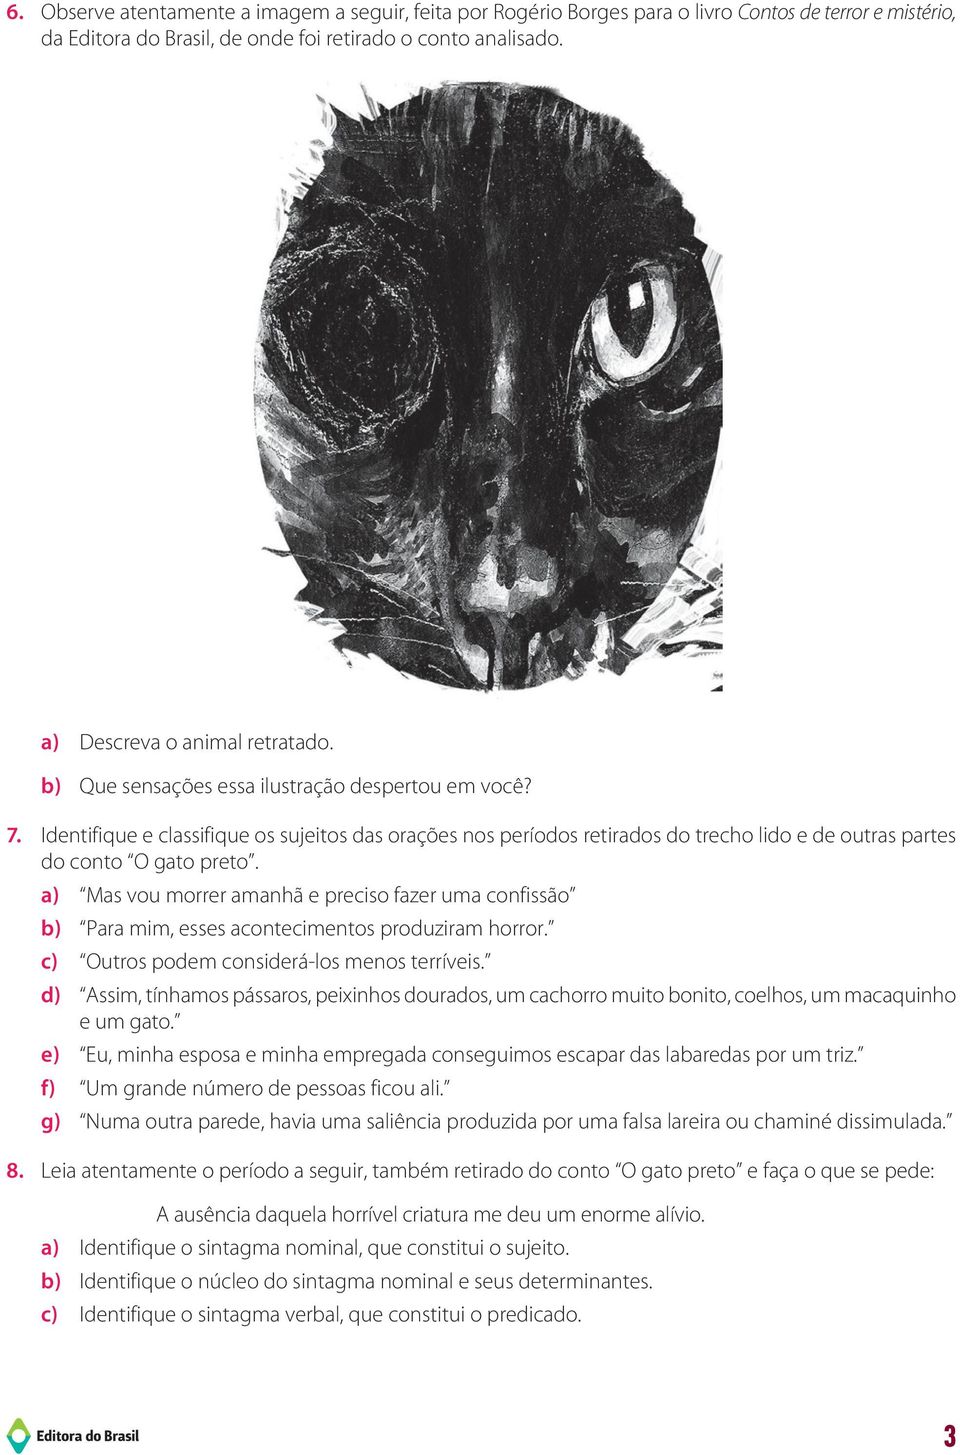 Identifique e classifique os sujeitos das orações nos períodos retirados do trecho lido e de outras partes do conto O gato preto.